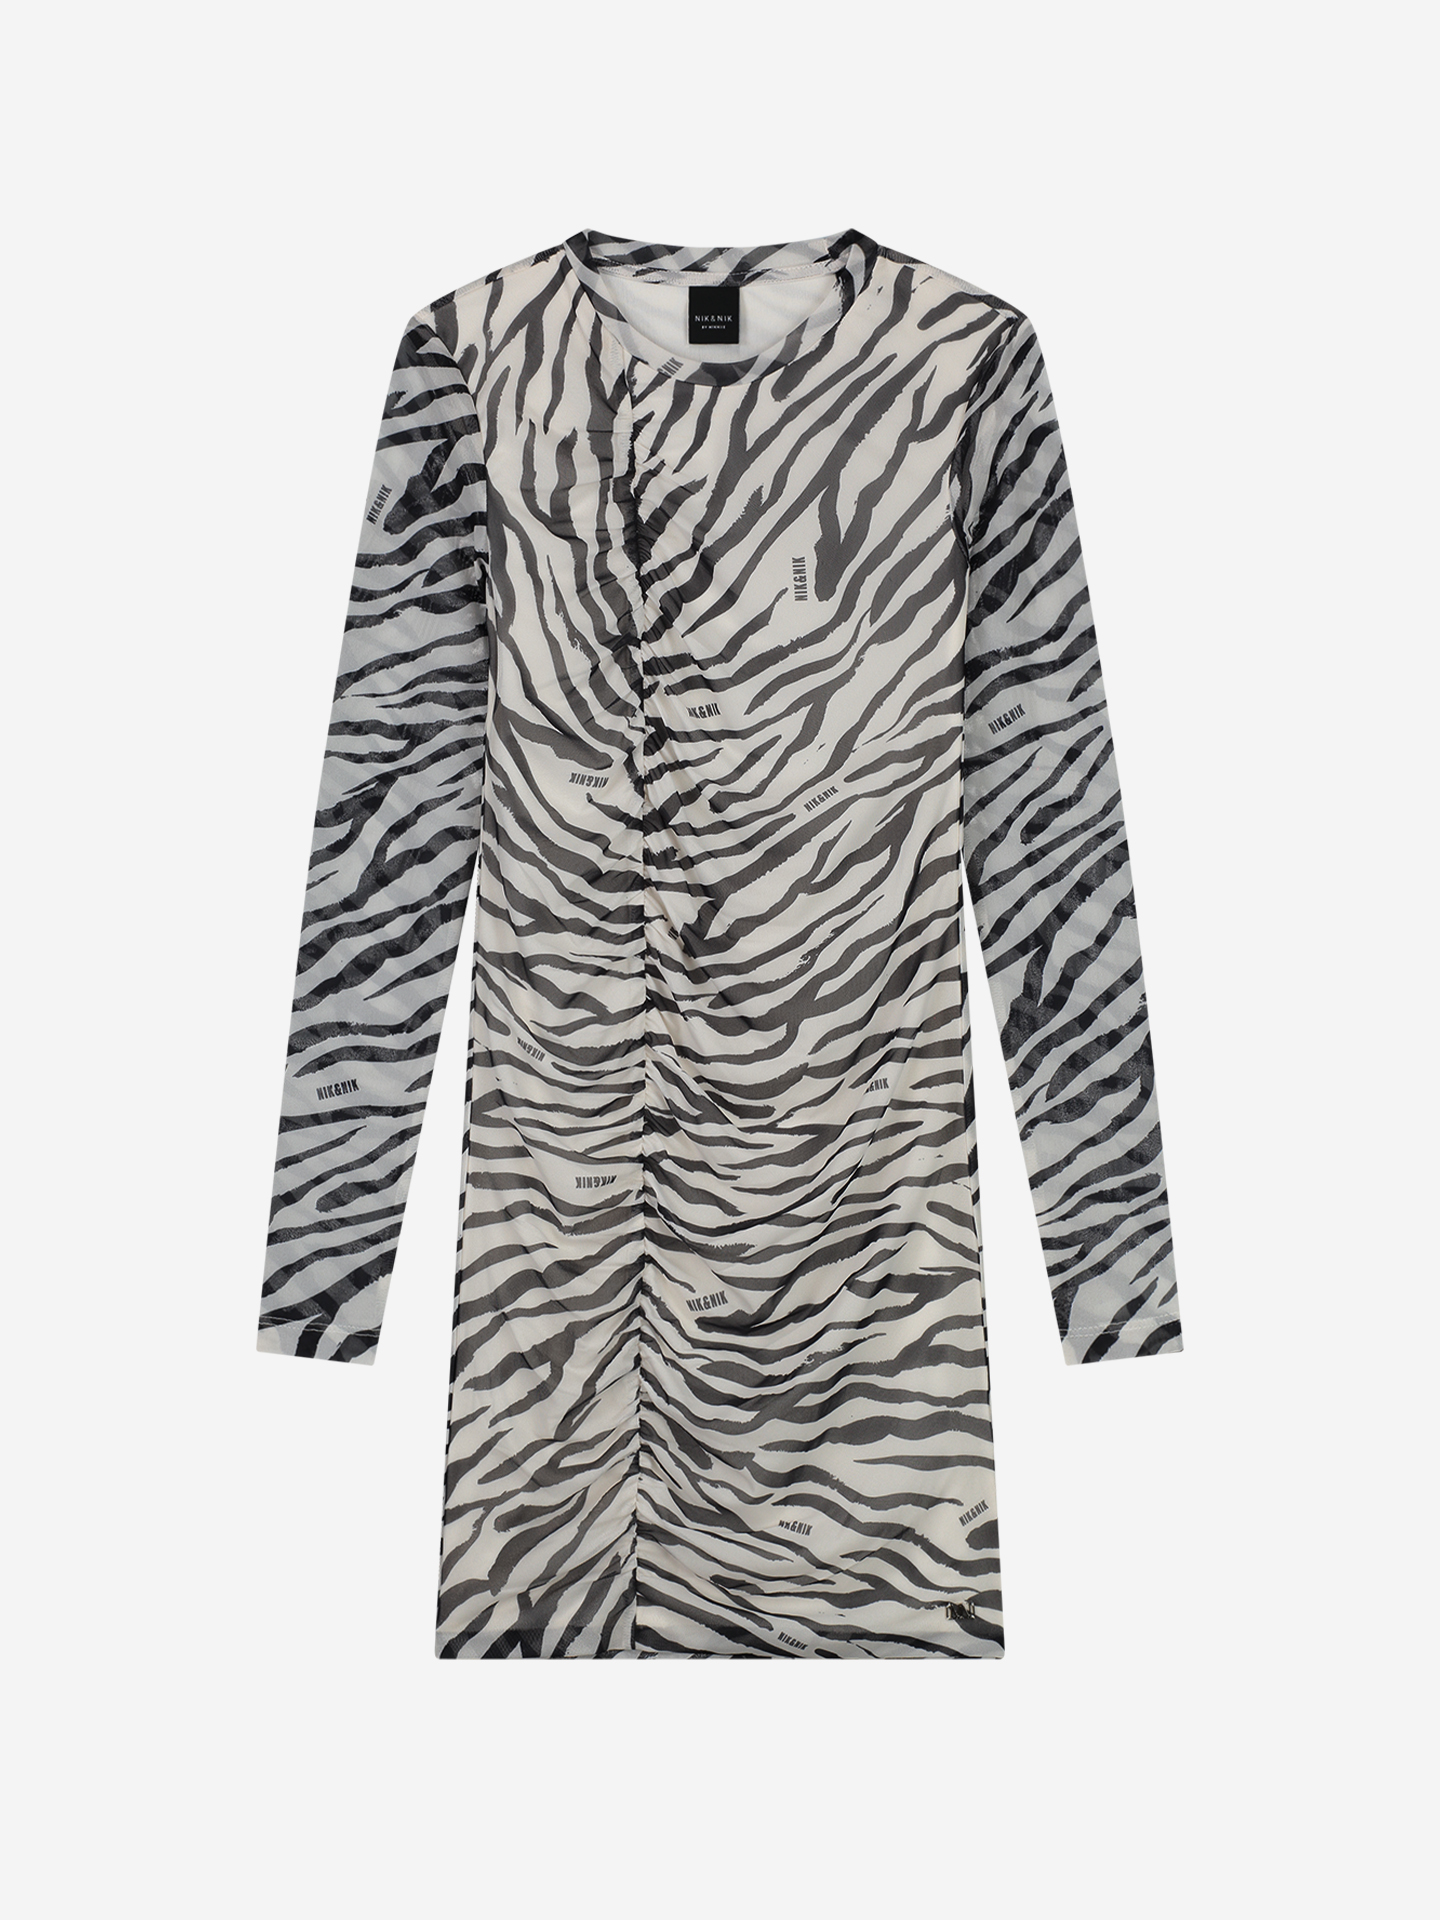 Zebra Mesh Dress